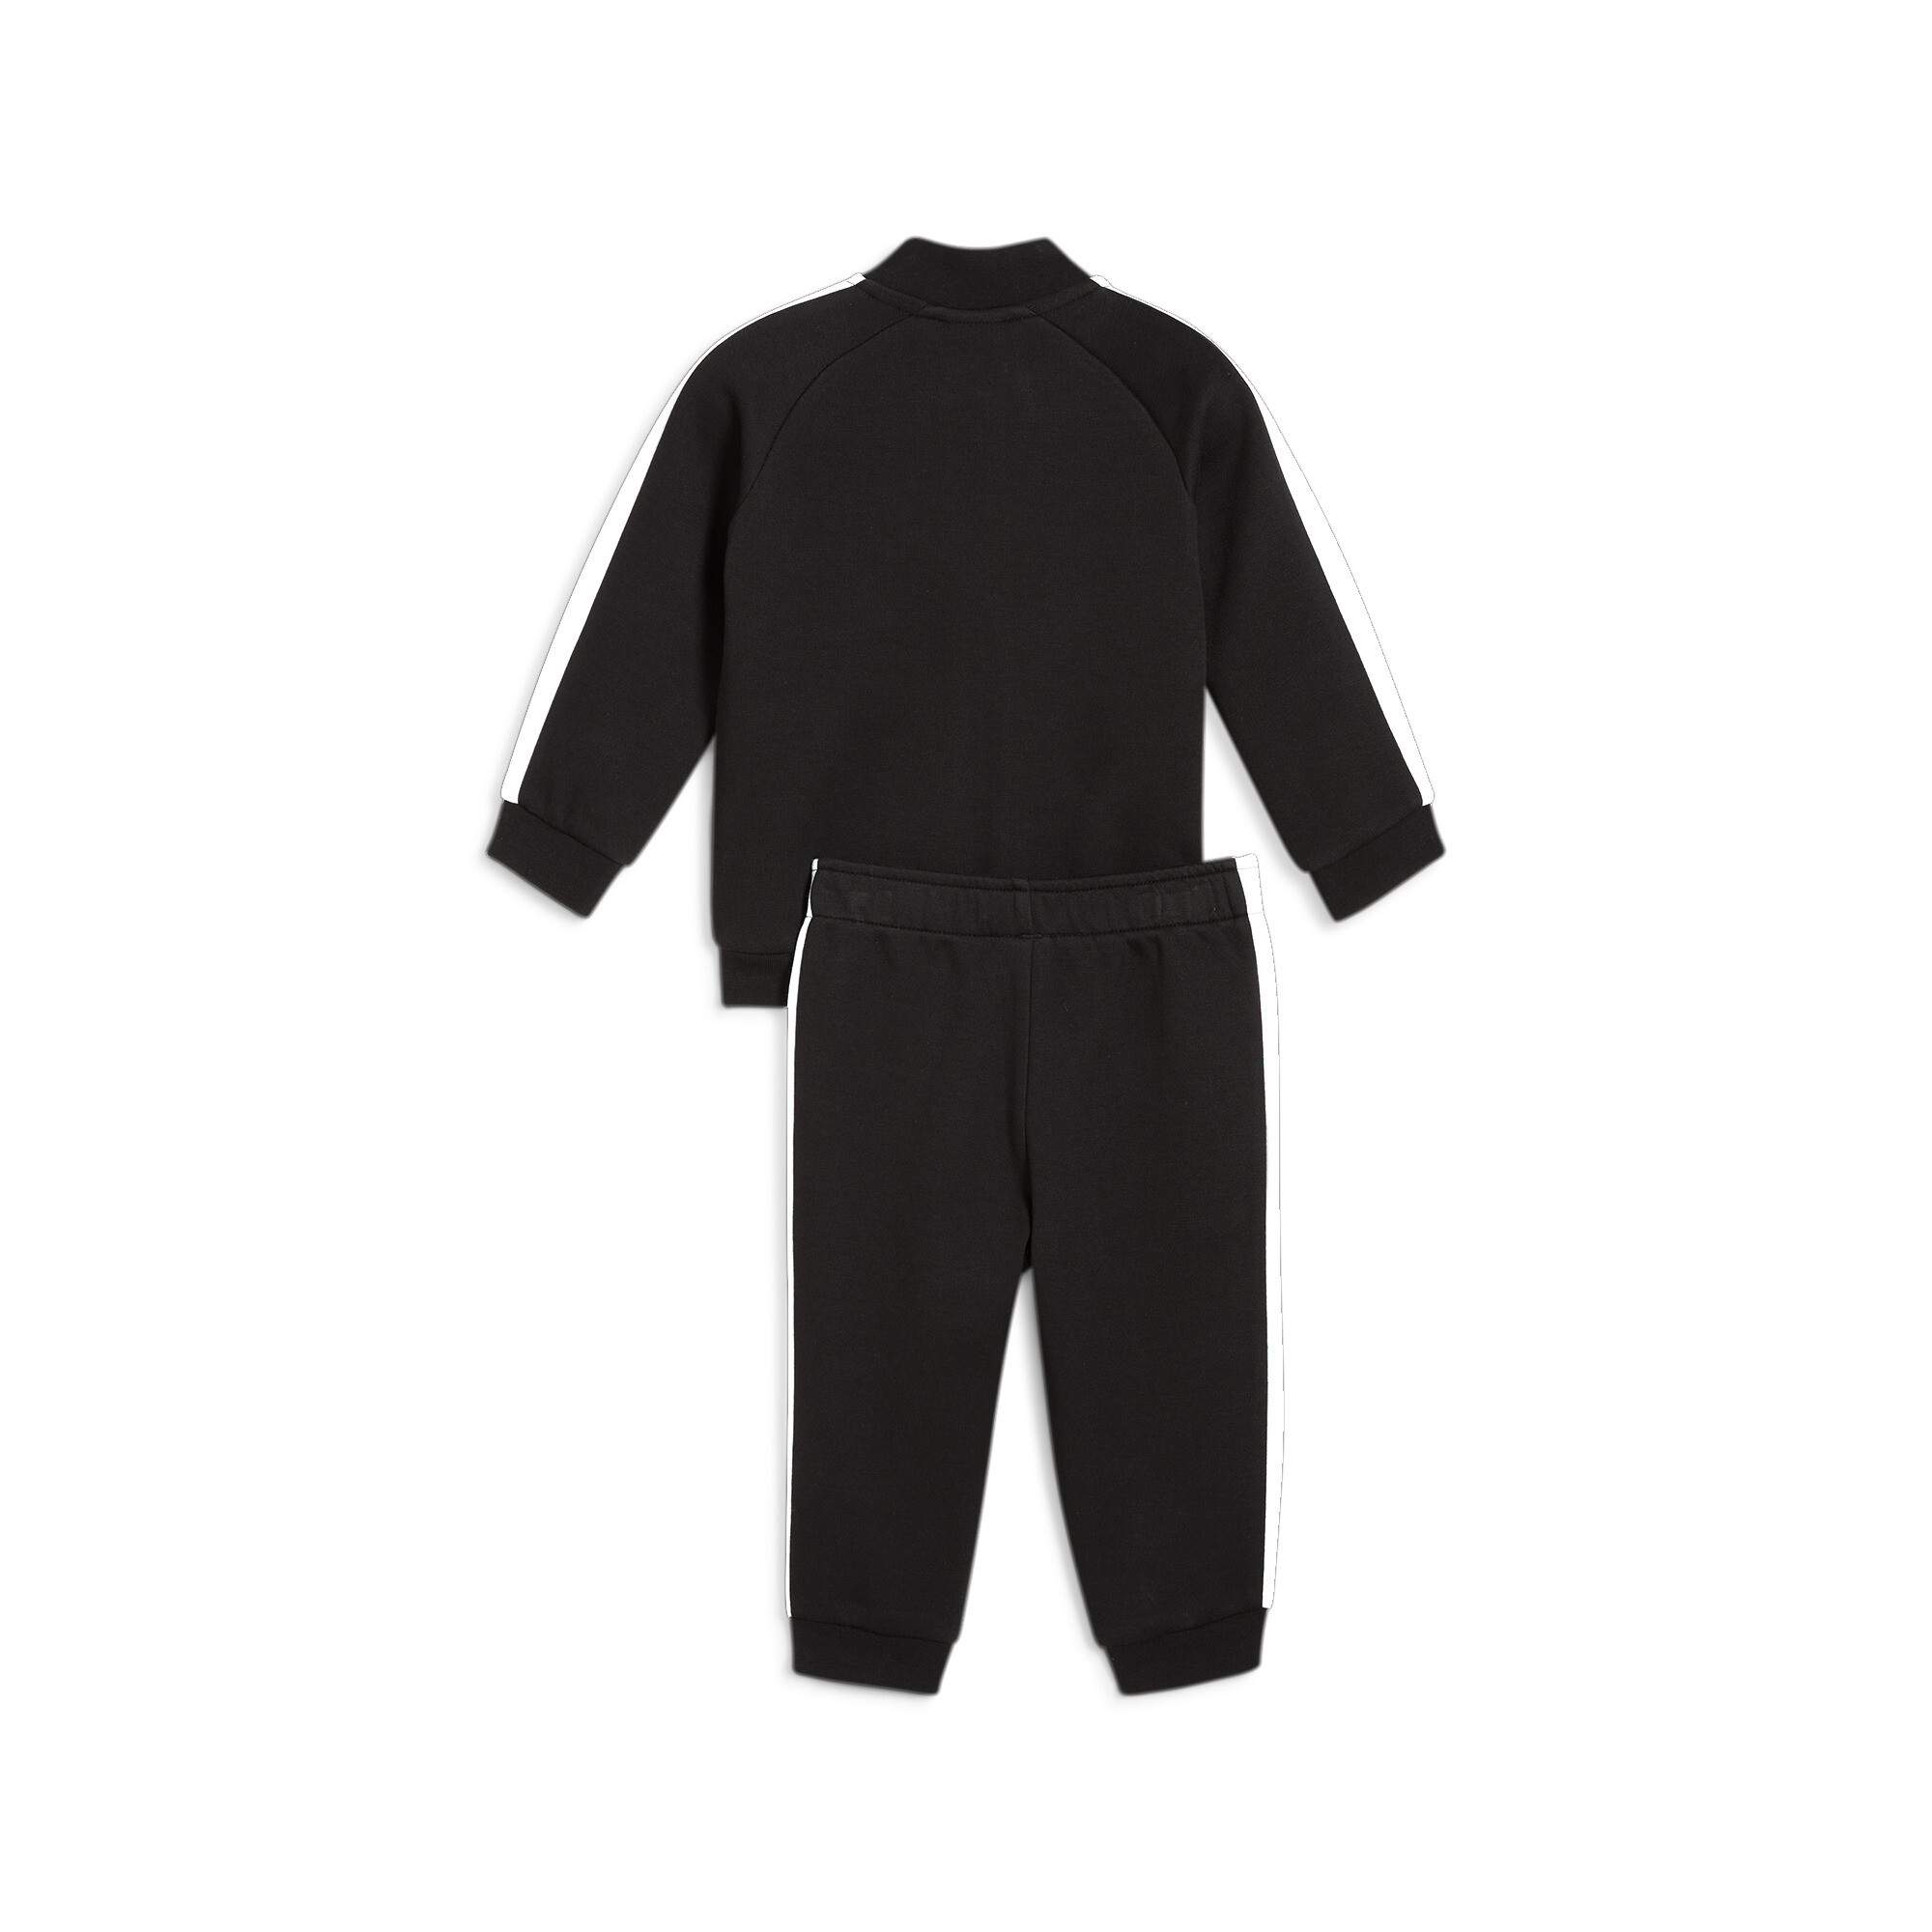 Puma MINICATS T7 ICONIC Baby Tracksuit Set, Black, Size 9-12M, Clothing